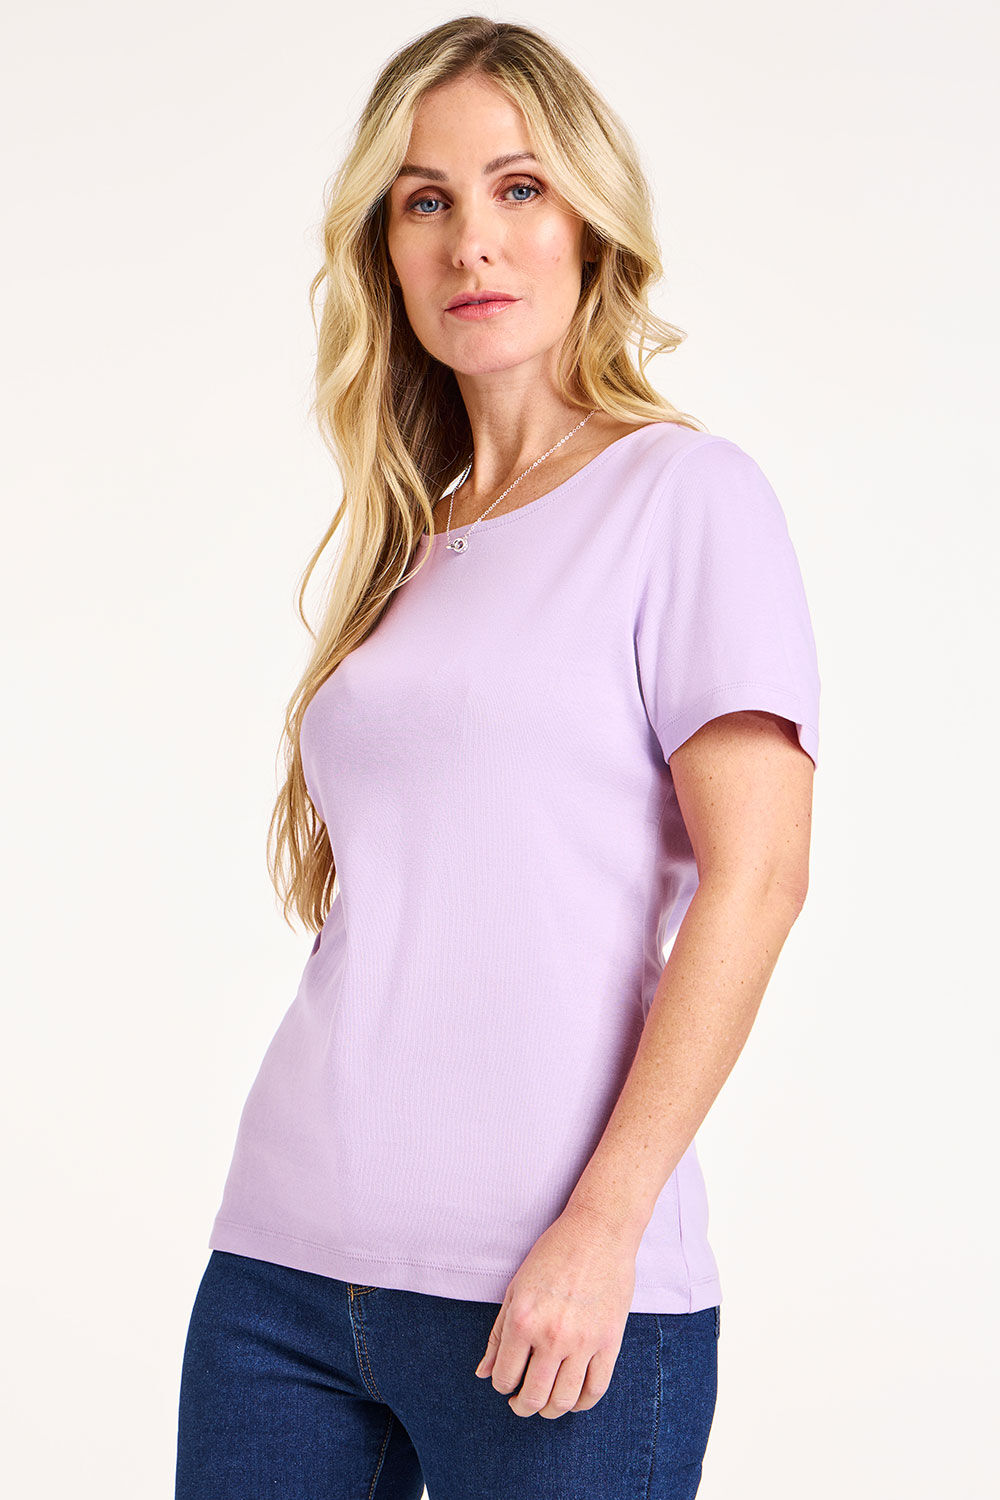 Bonmarche Women’s Light Purple Cotton Classic Short Sleeve Plain Scoop Neck T-Shirt, Size: 10